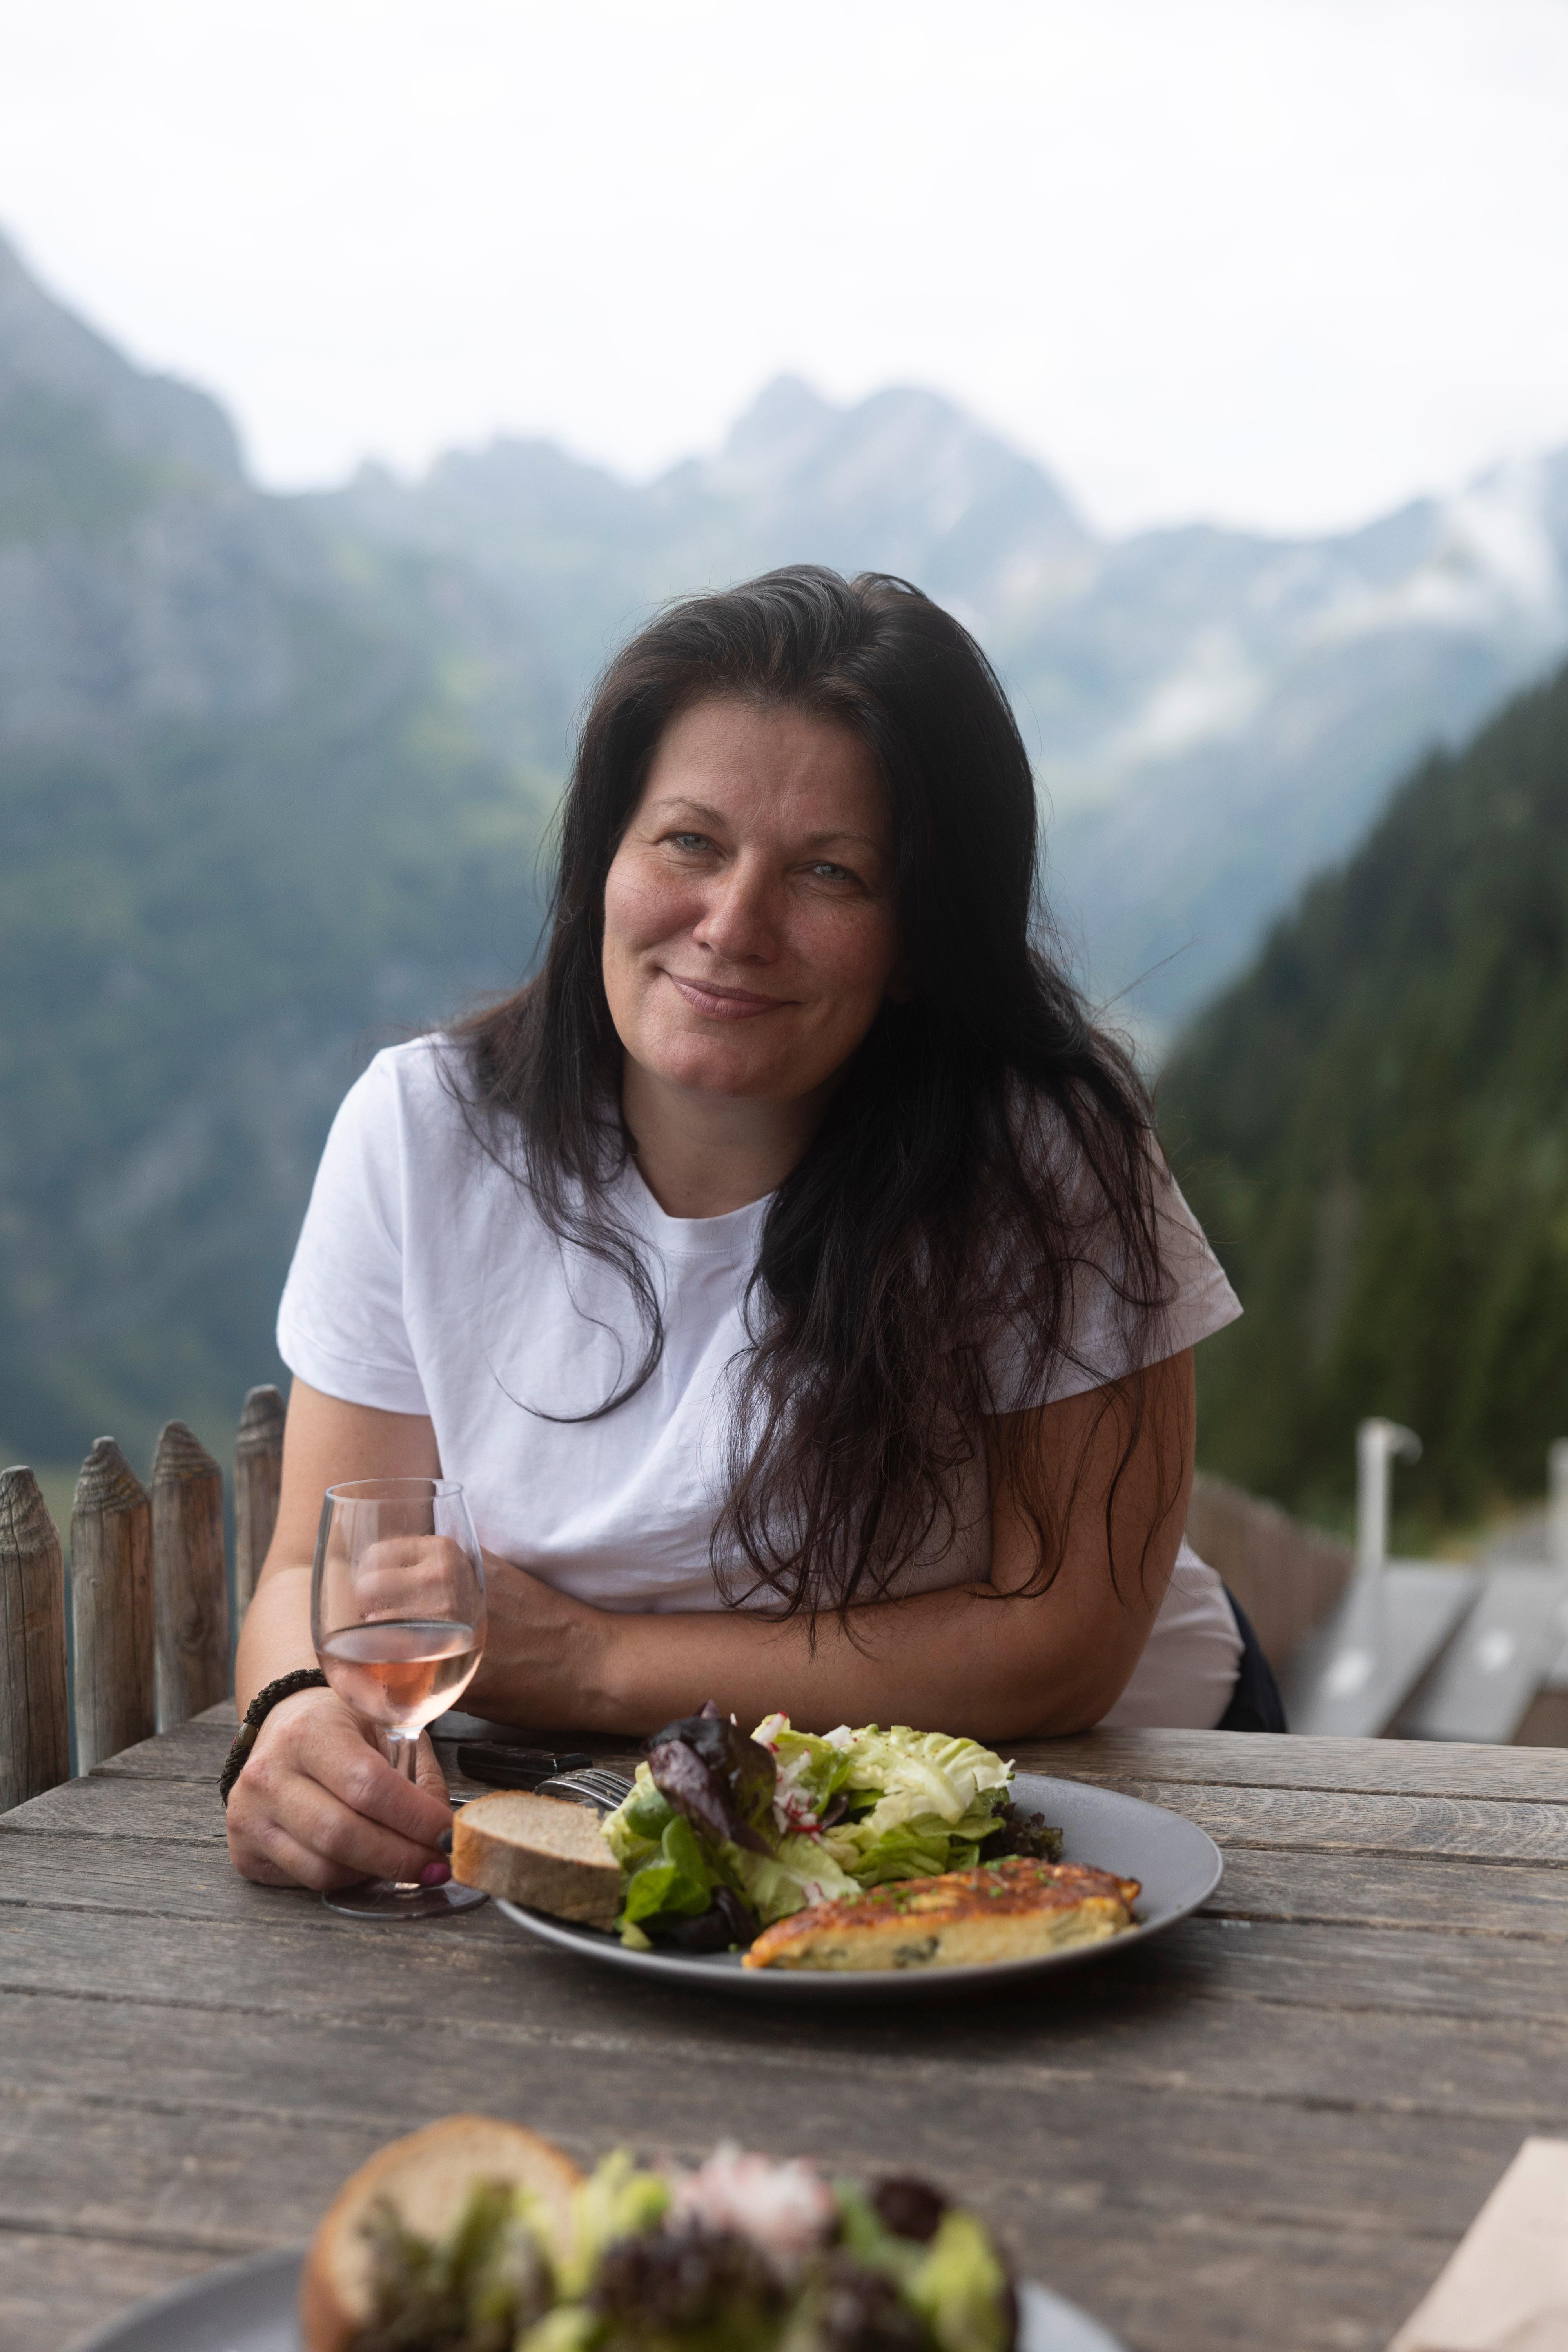 Merete Bø er journalist og vinekspert i DN, og har nylig gitt ut bok om ost og vin, hvor hun skriver om oster fra flere land og vintips som matcher godt.